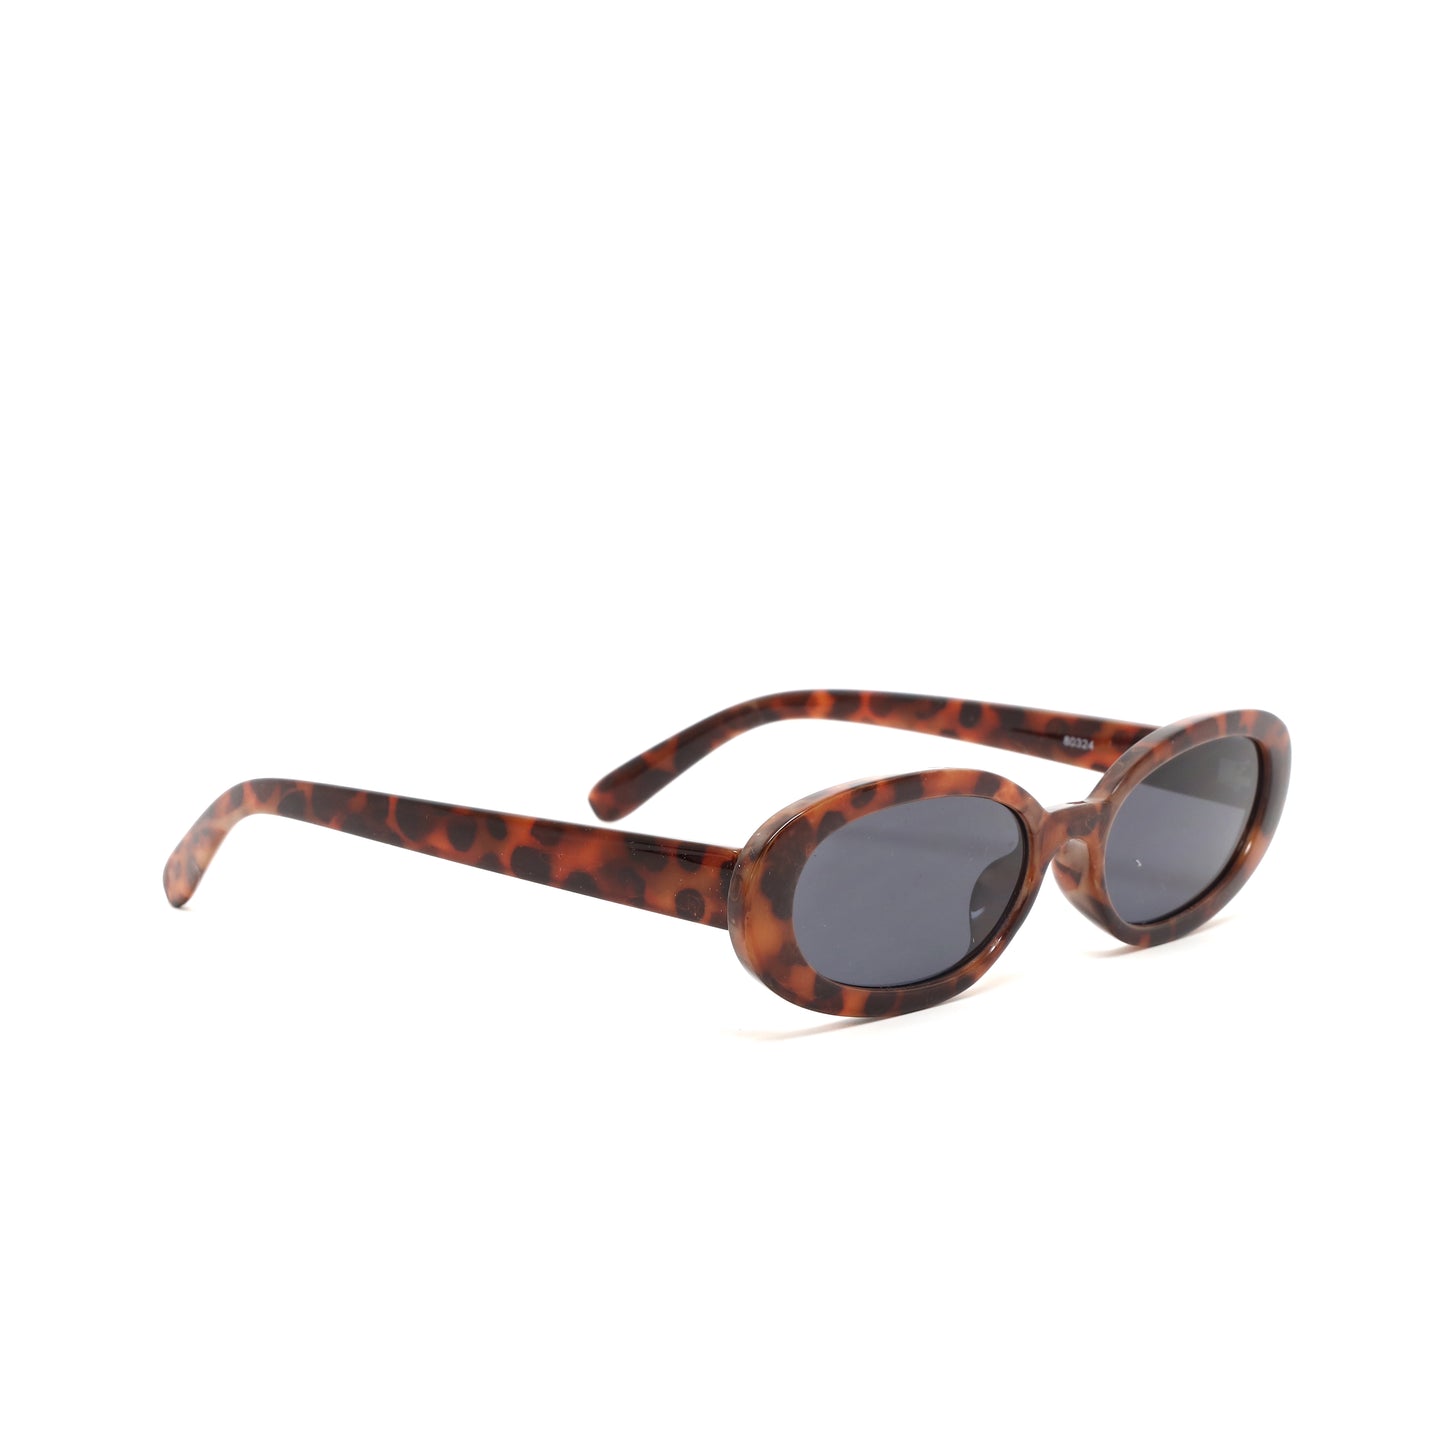 Retro Modern Standard Oval Frame Sunglasses - Tortoise